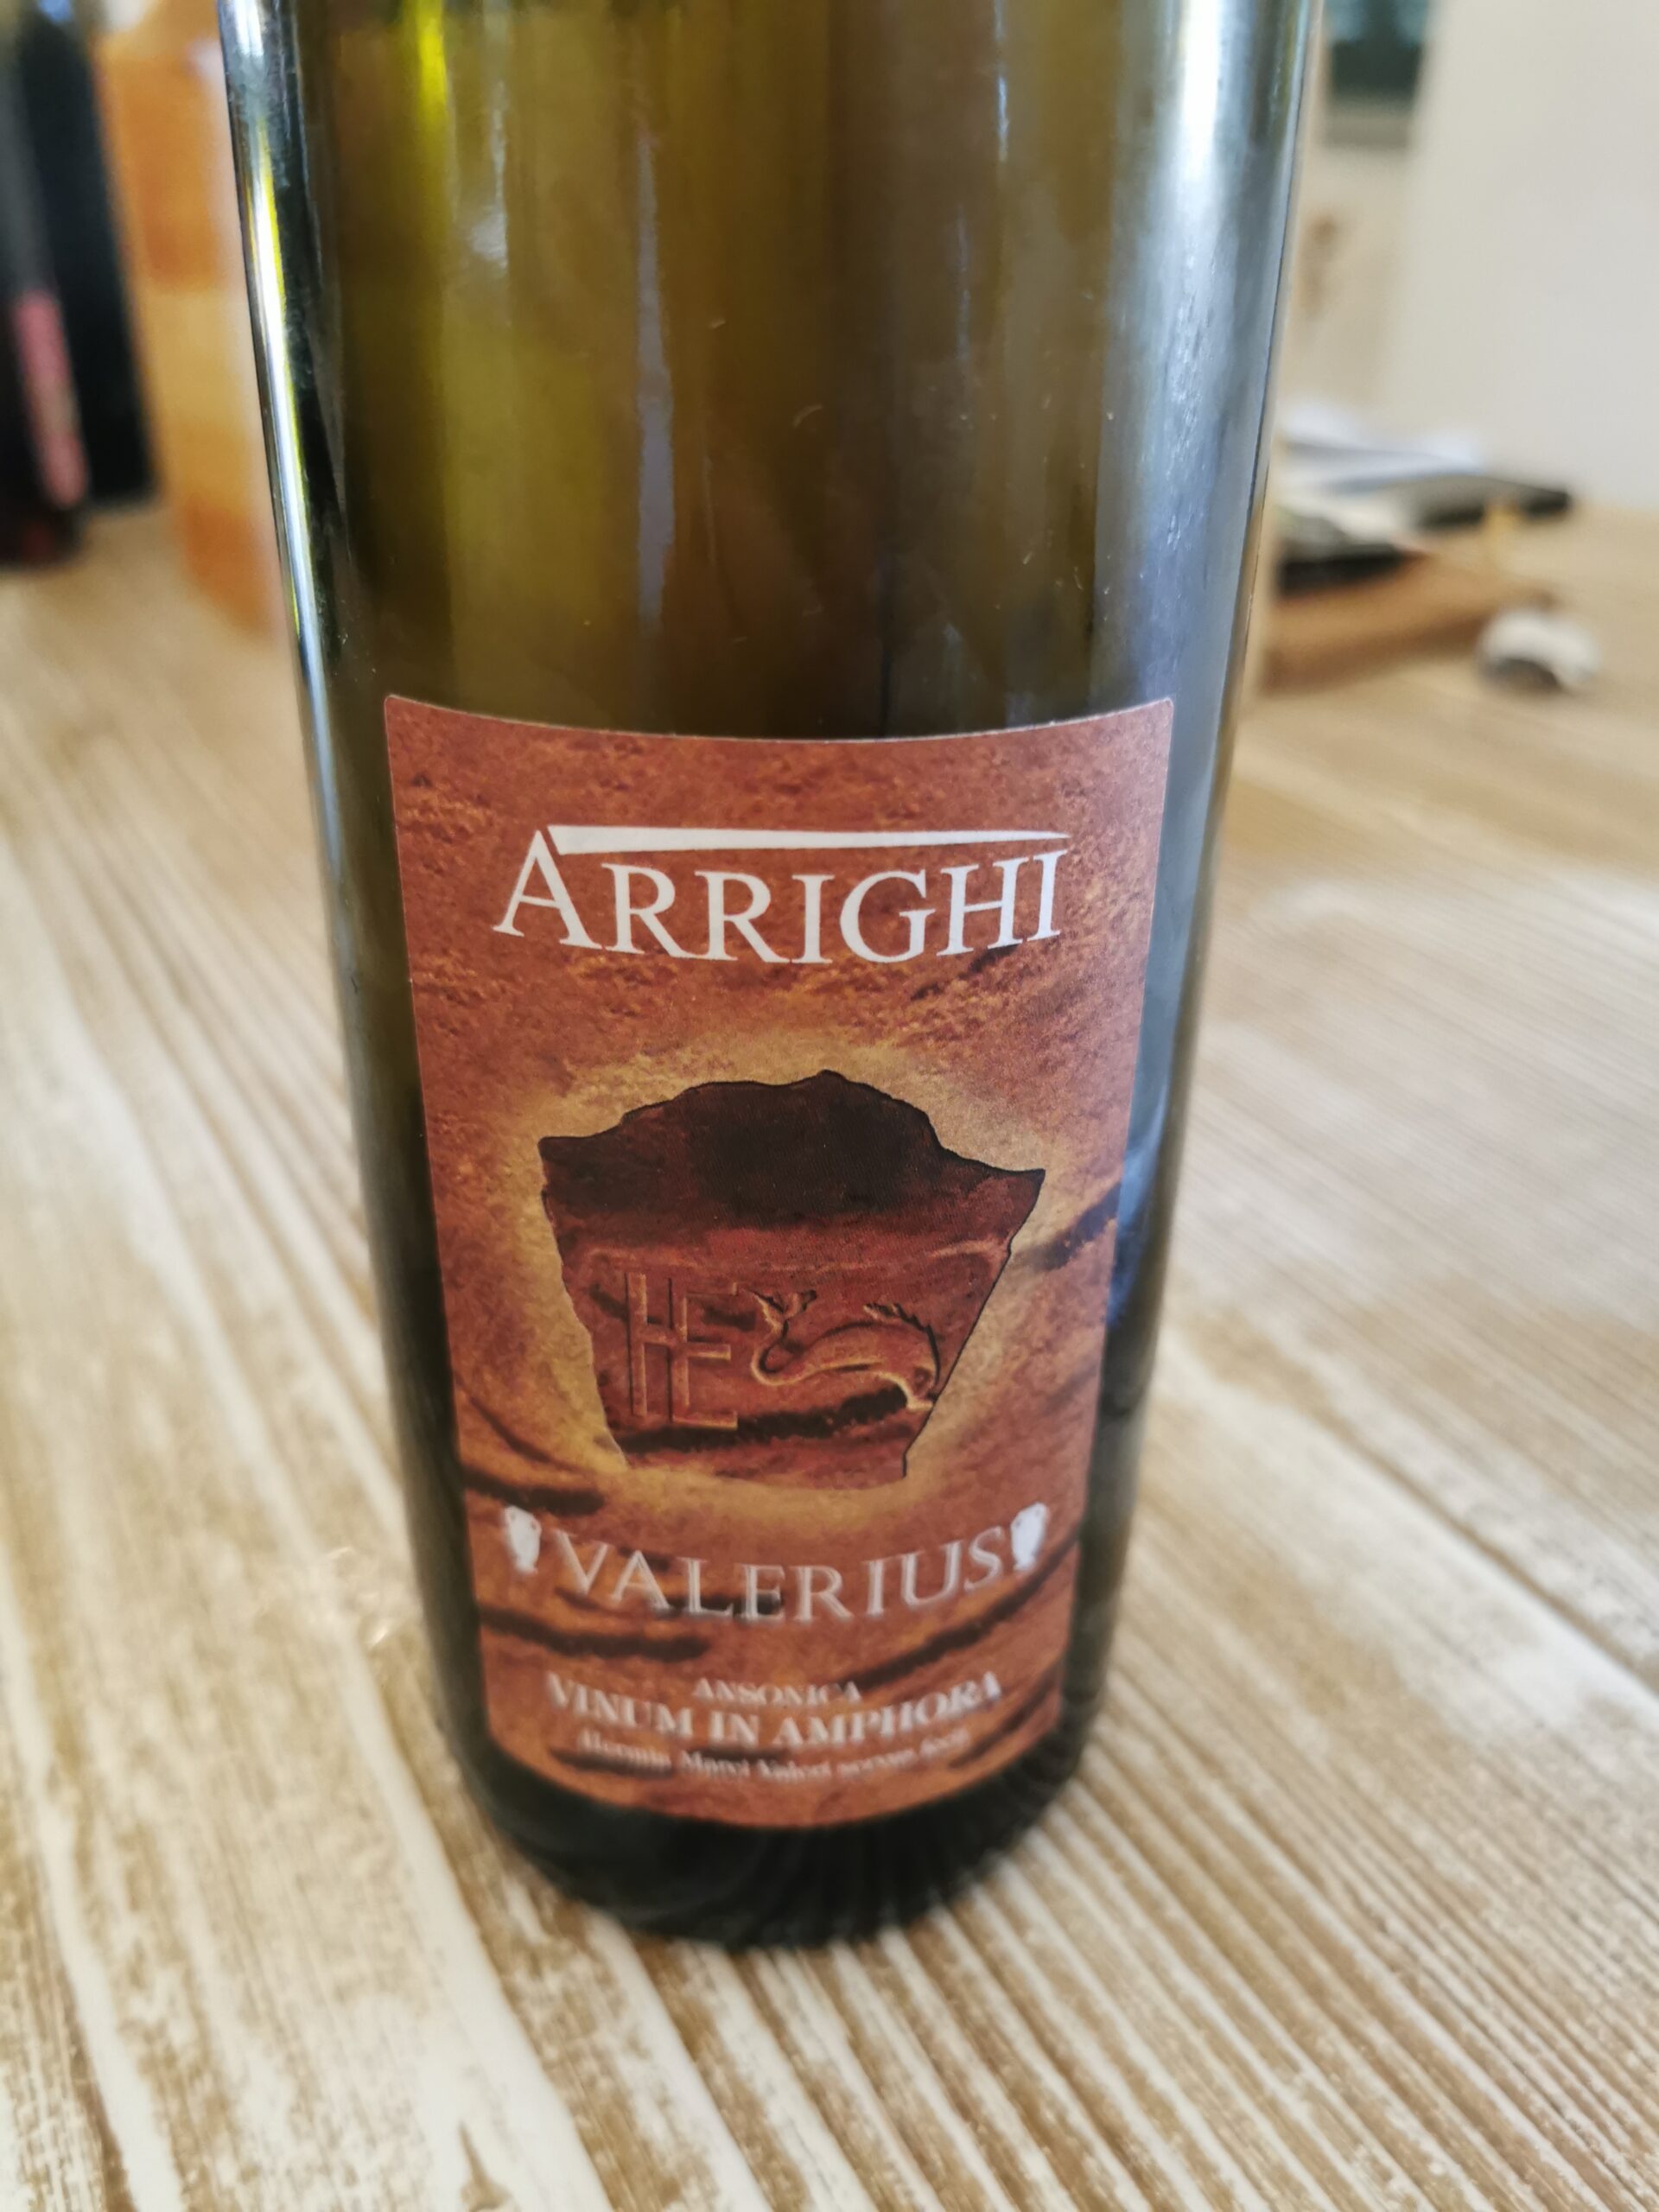 Bottiglia Valerius di Arrighi, articolo: Vini della Costa, l'anteprima a Lucca Gustosa 2023, foto di Elsa Leandri